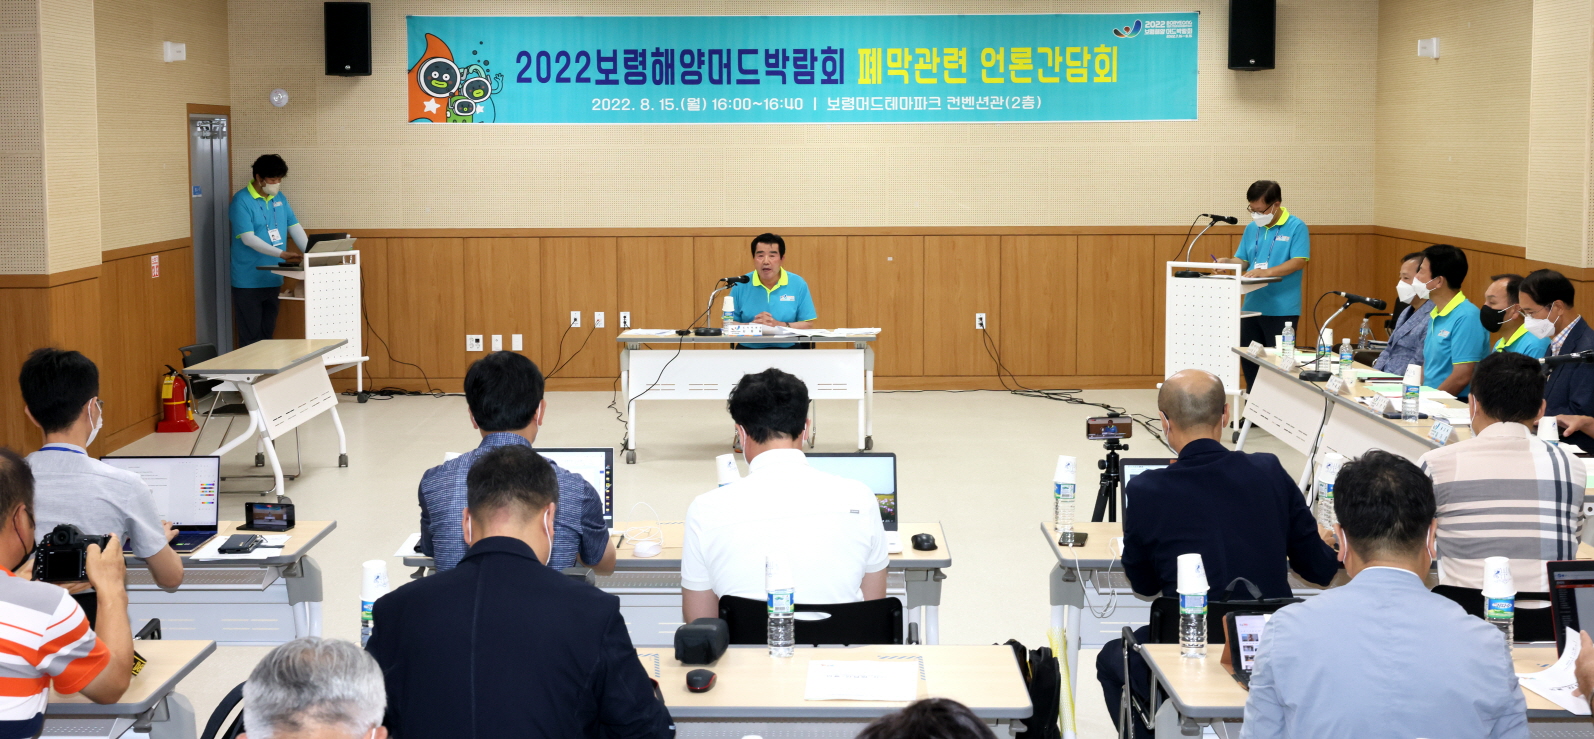 민선8기_2022 보령해양머드박람회 폐막관련 언론 간담회